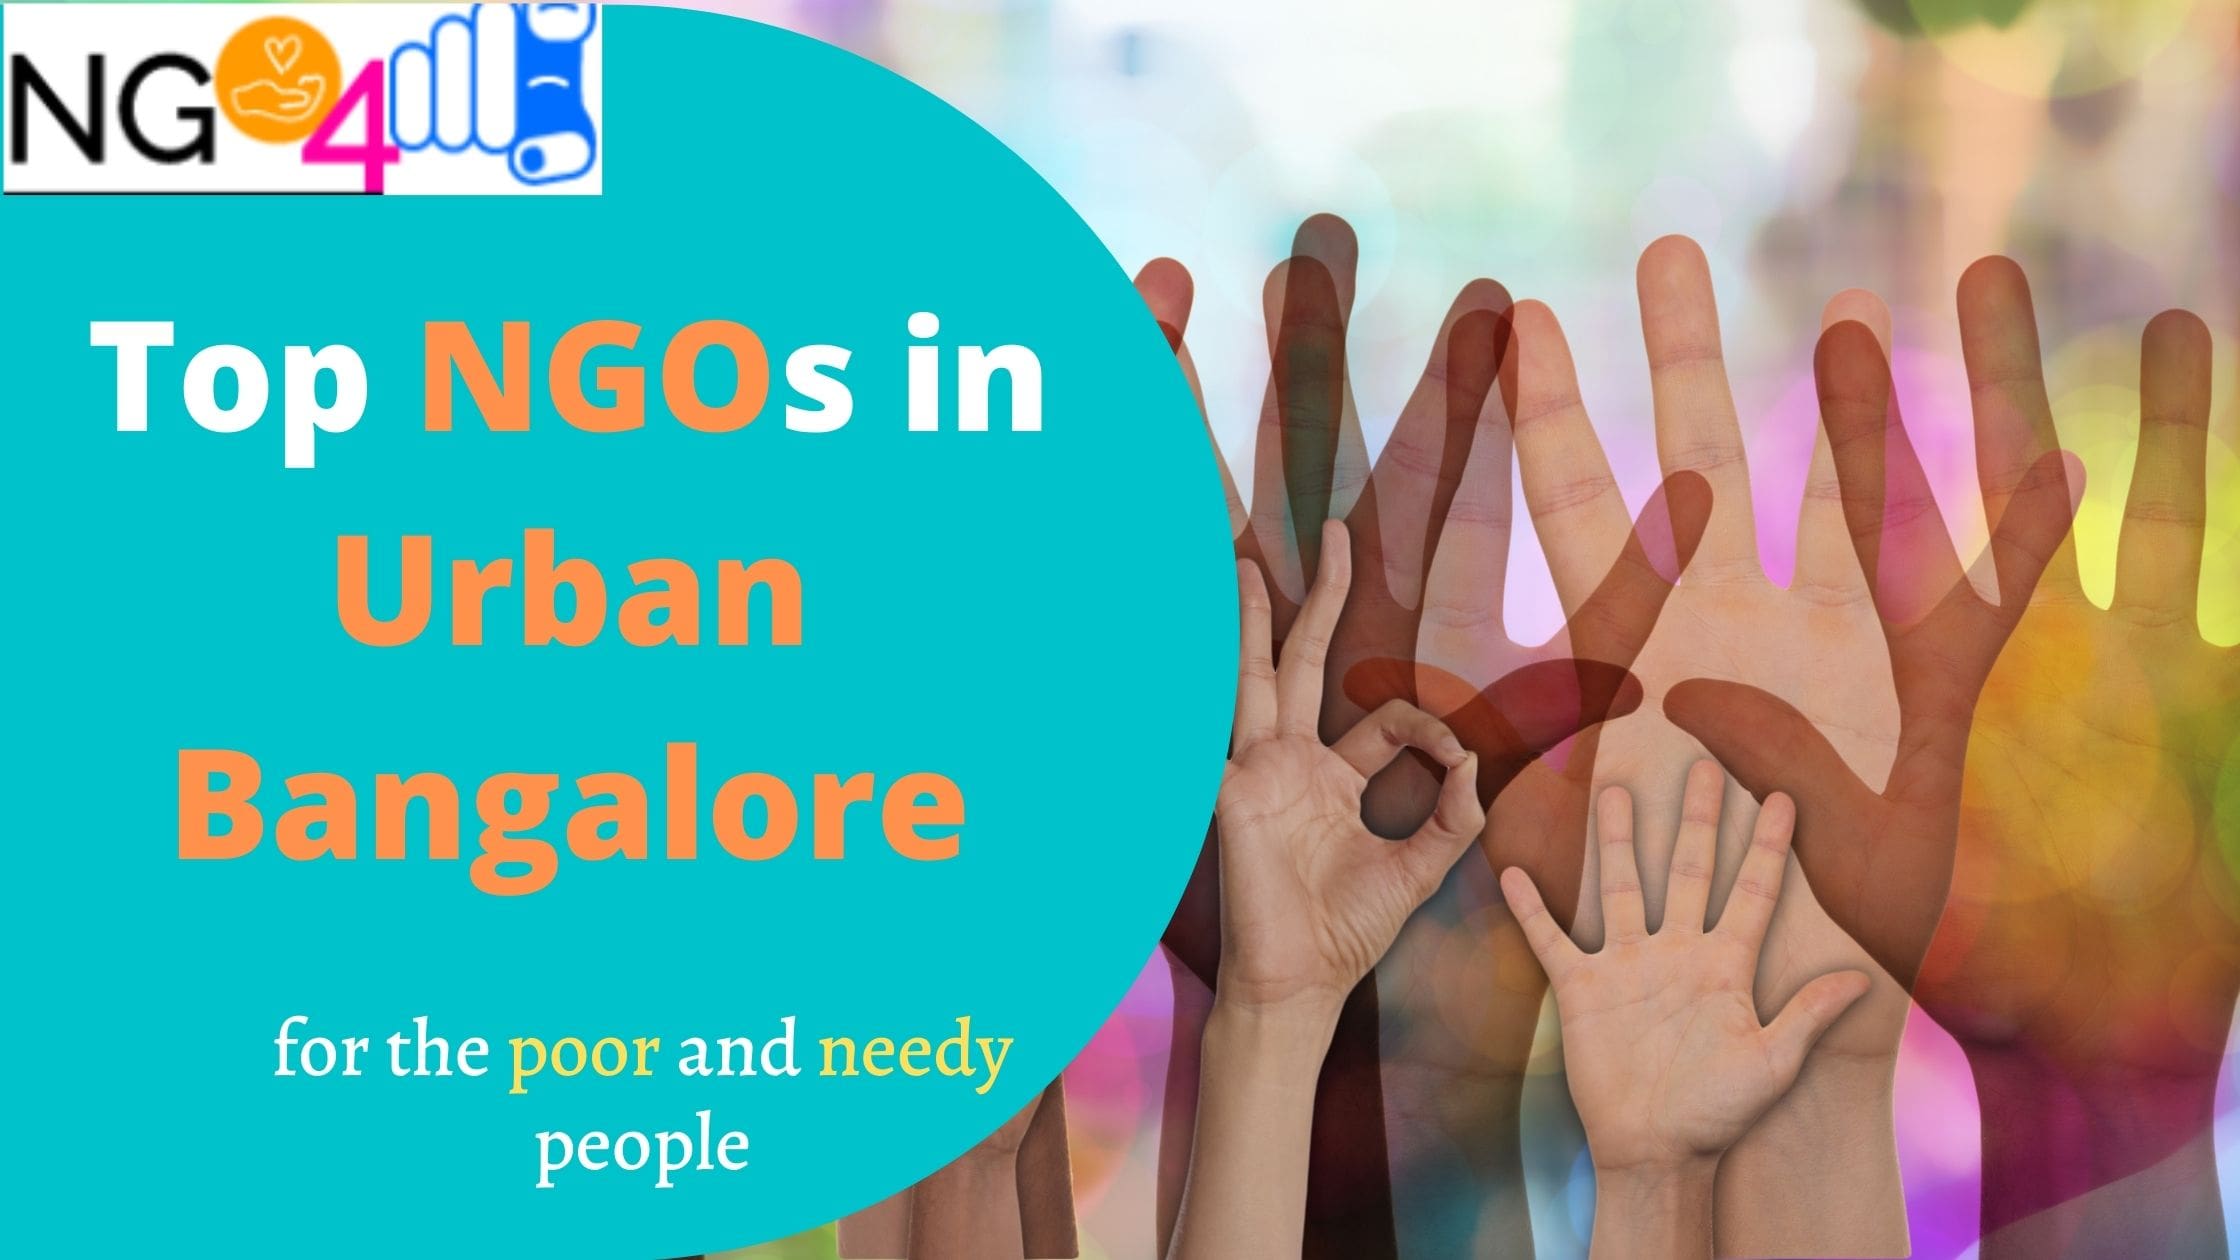 NGOs in Urban Bangalore